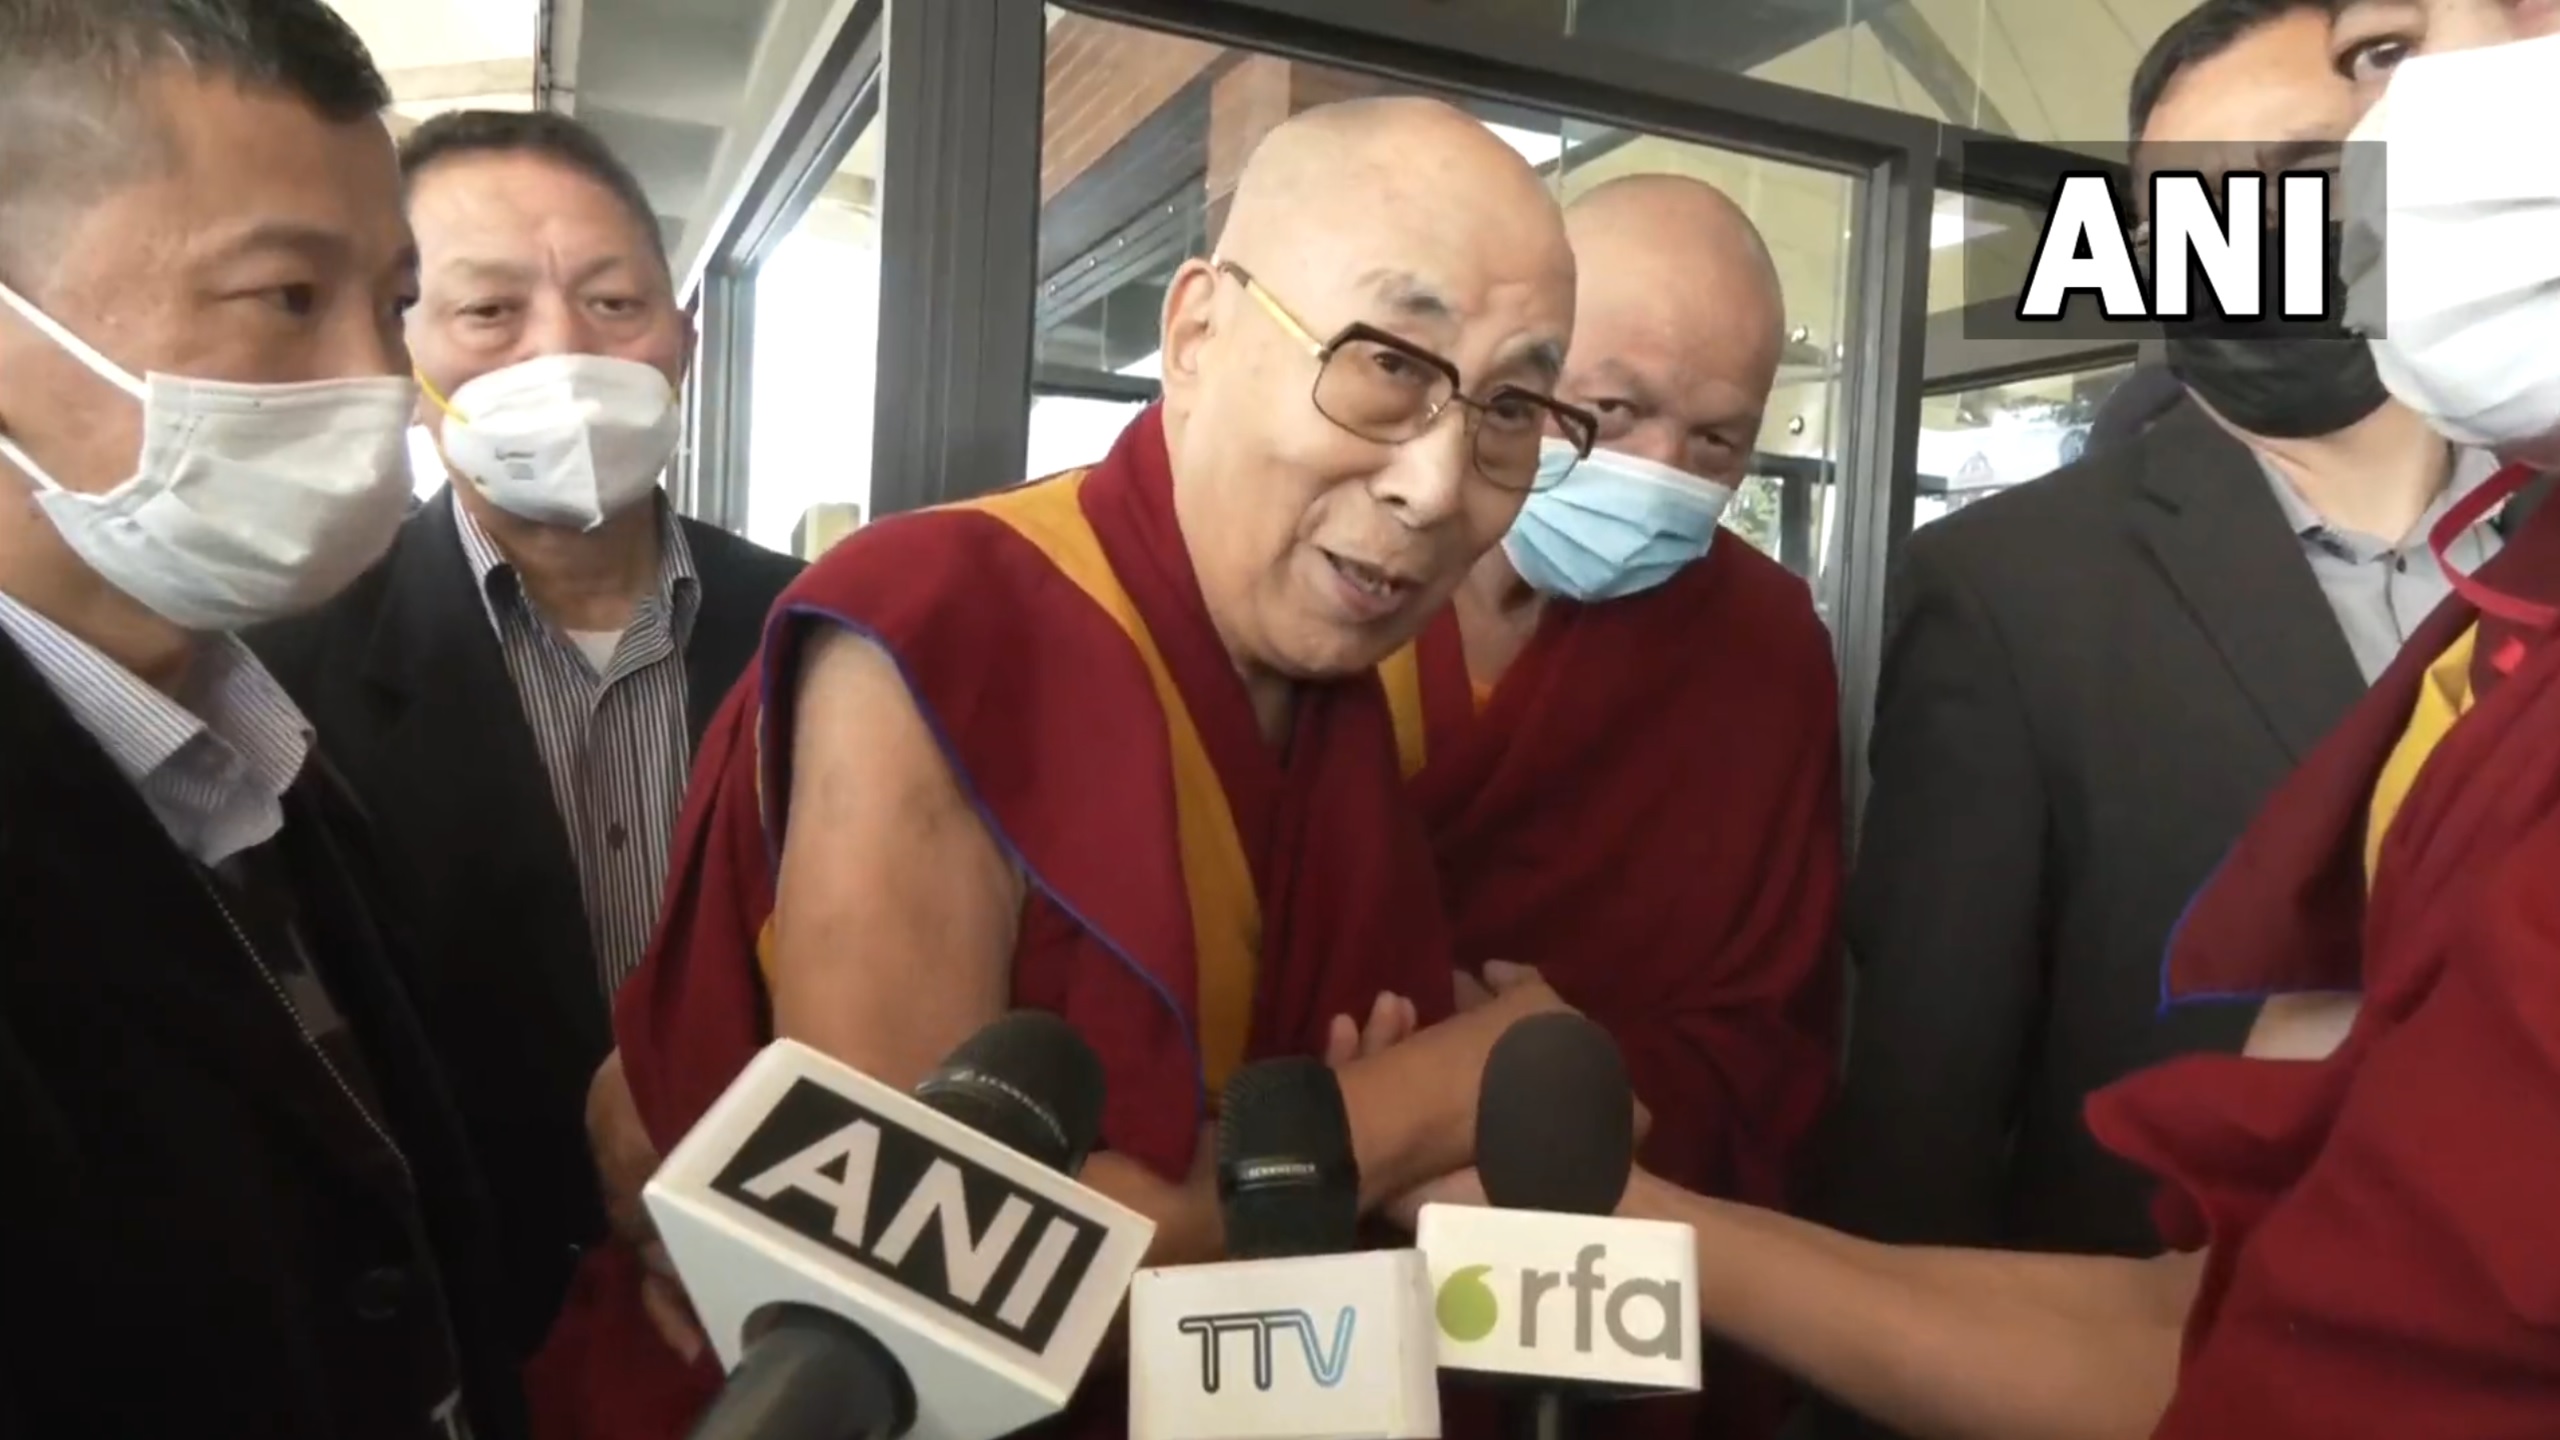 dalai láma